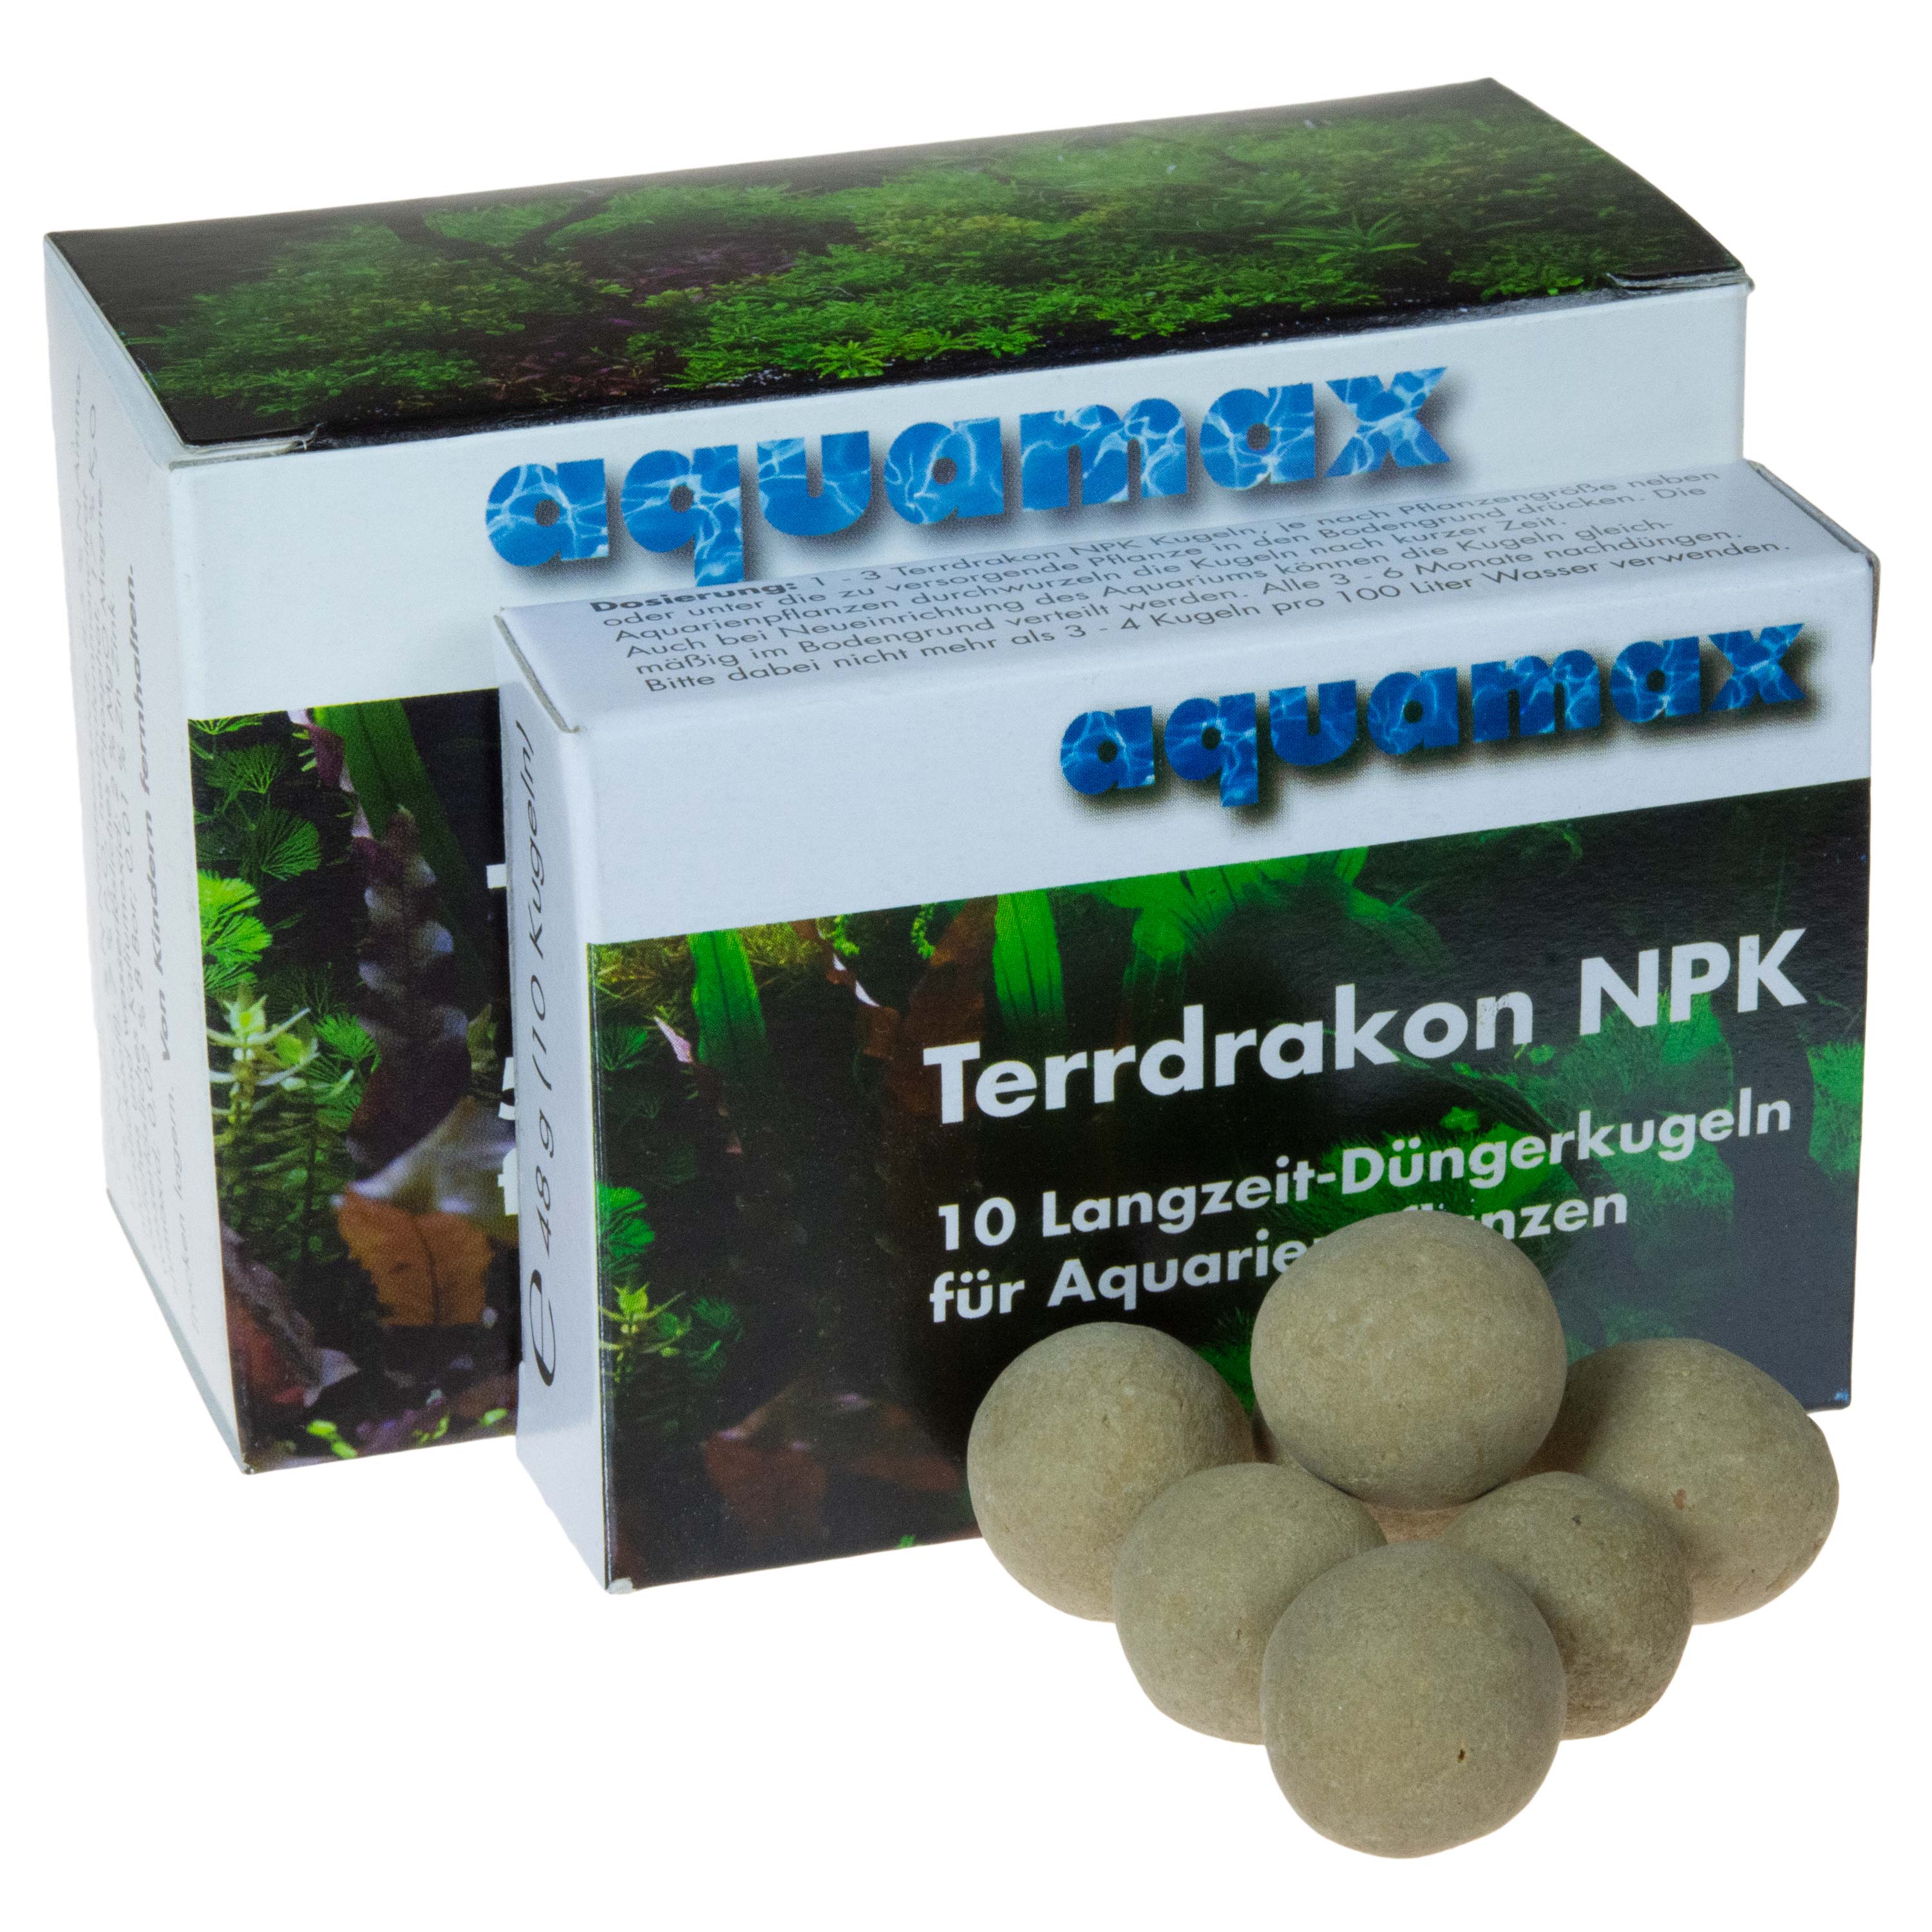 Terrdrakon NPK balls aquamax 10 and 50 pieces